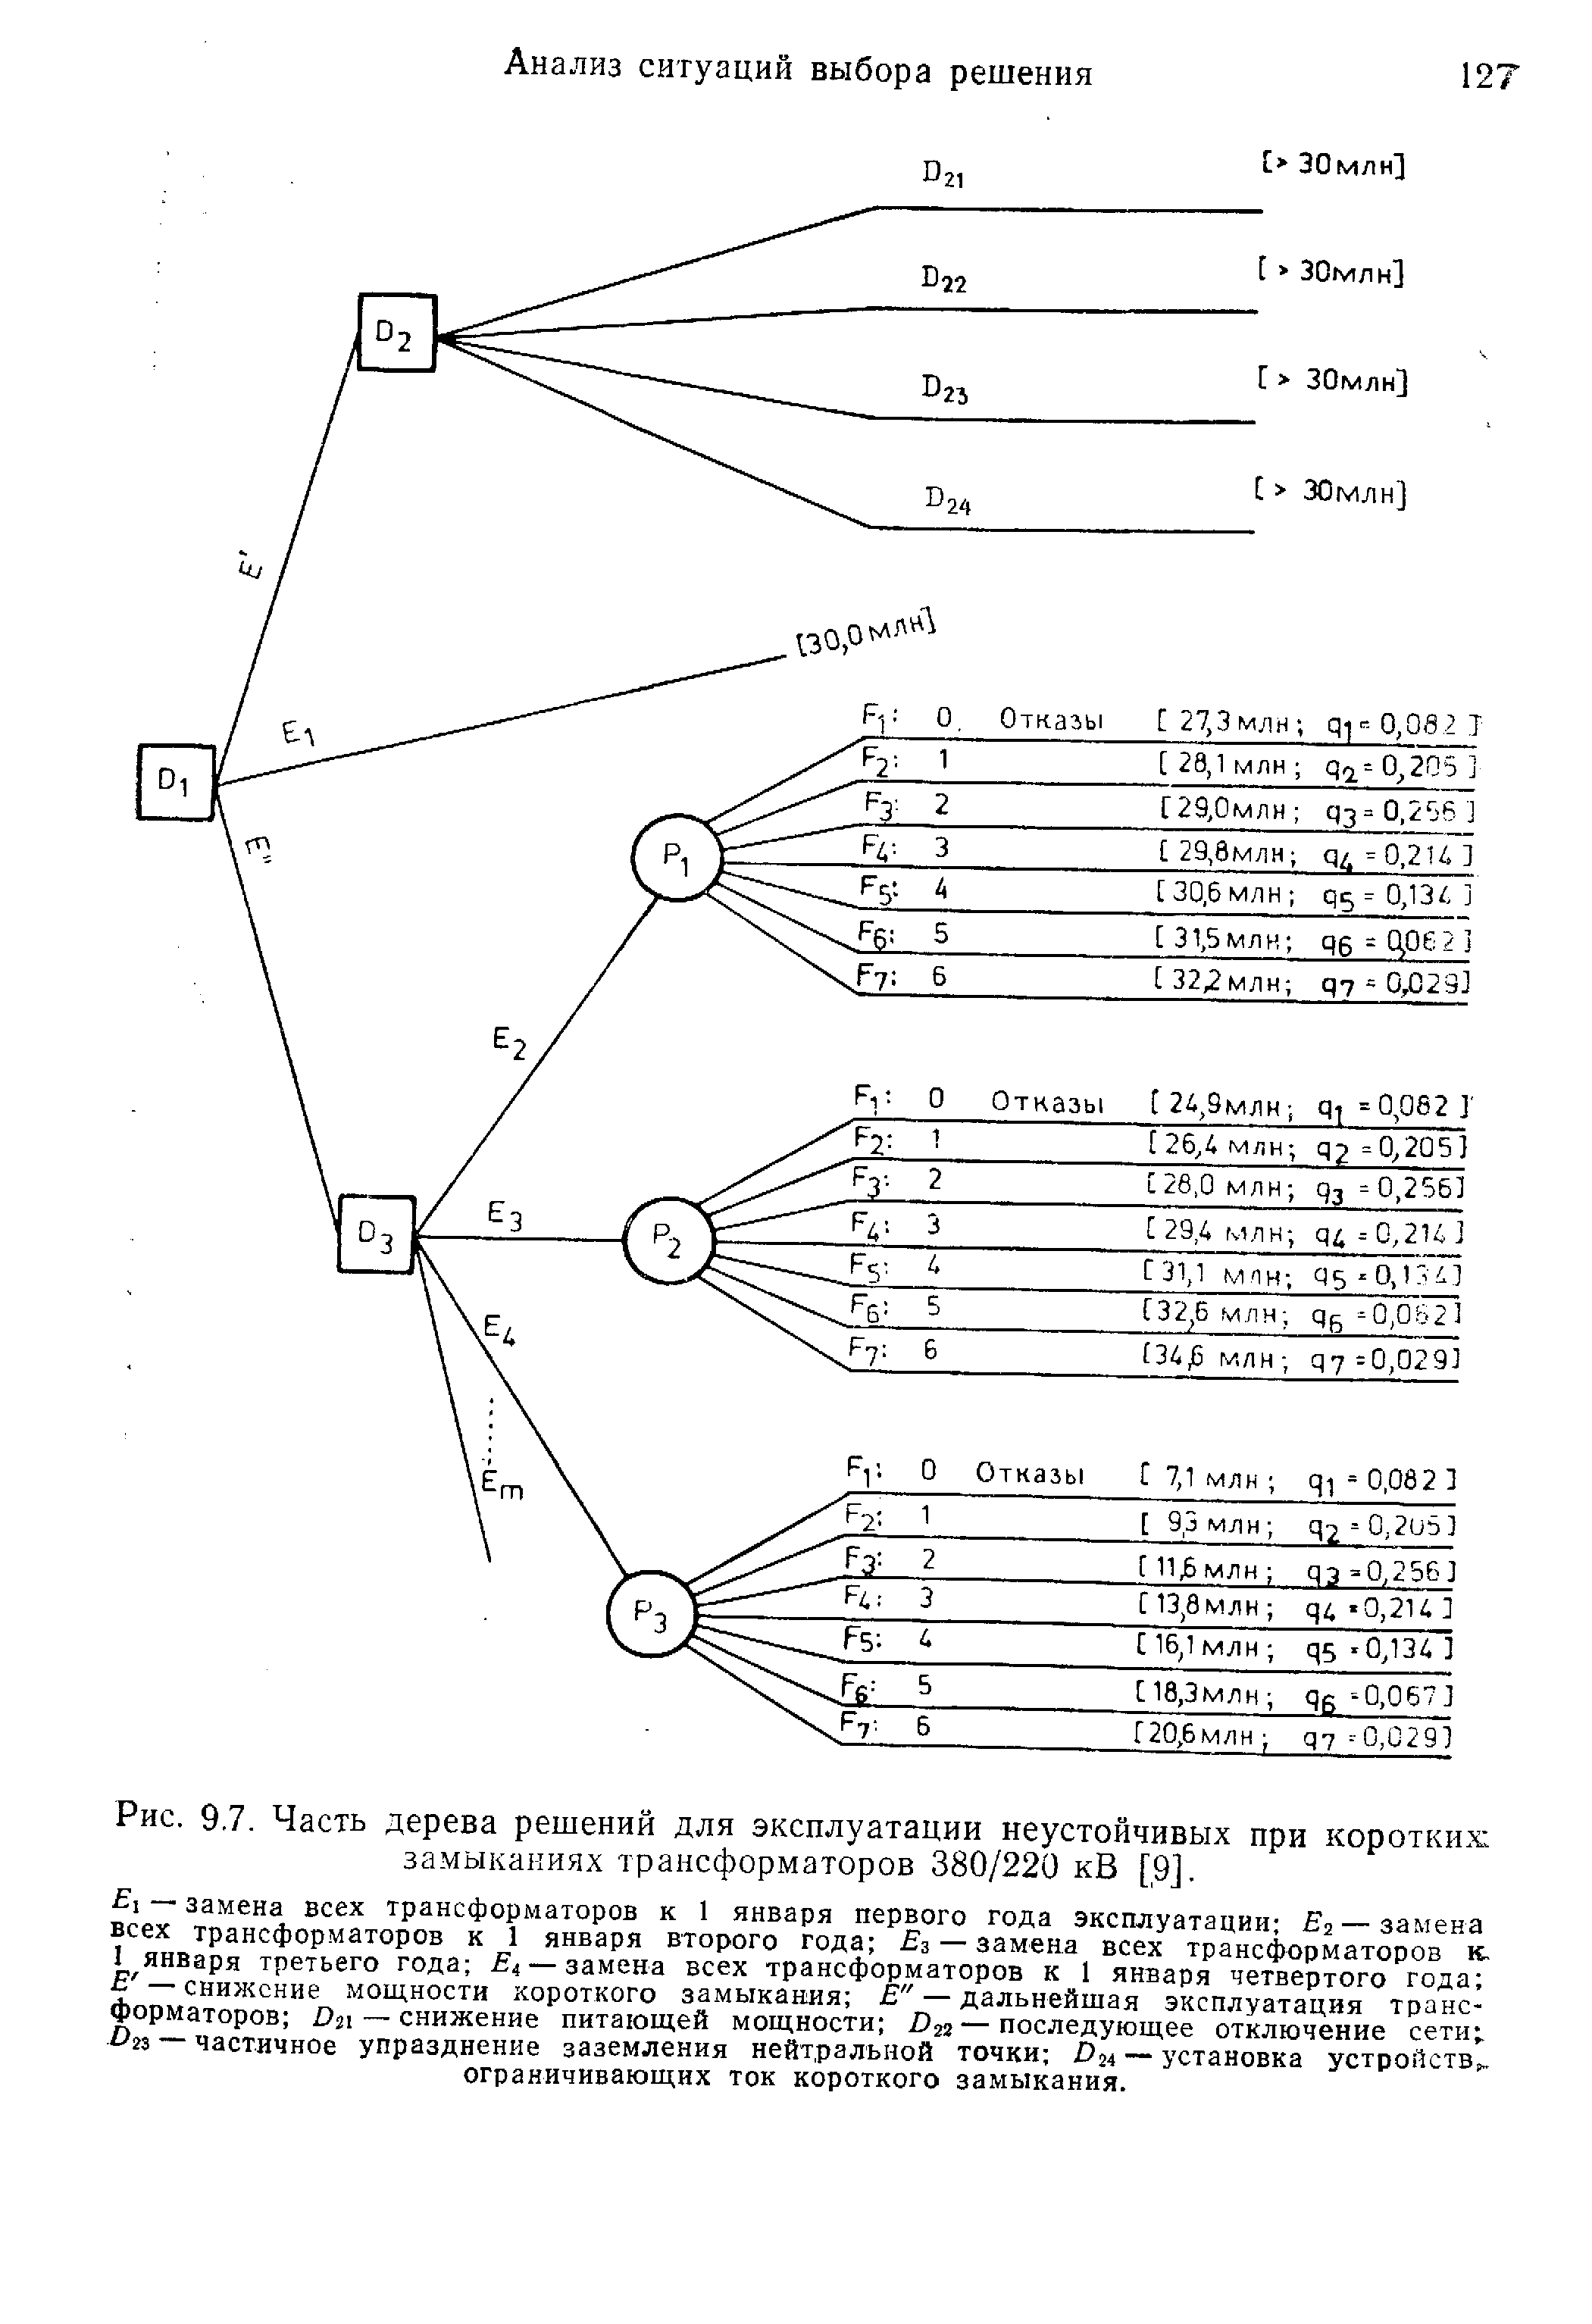 Рис. 9.7. Часть дерева решений для эксплуатации неустойчивых при <a href="/info/208875">коротких замыканиях</a> трансформаторов 380/220 кВ [9].
